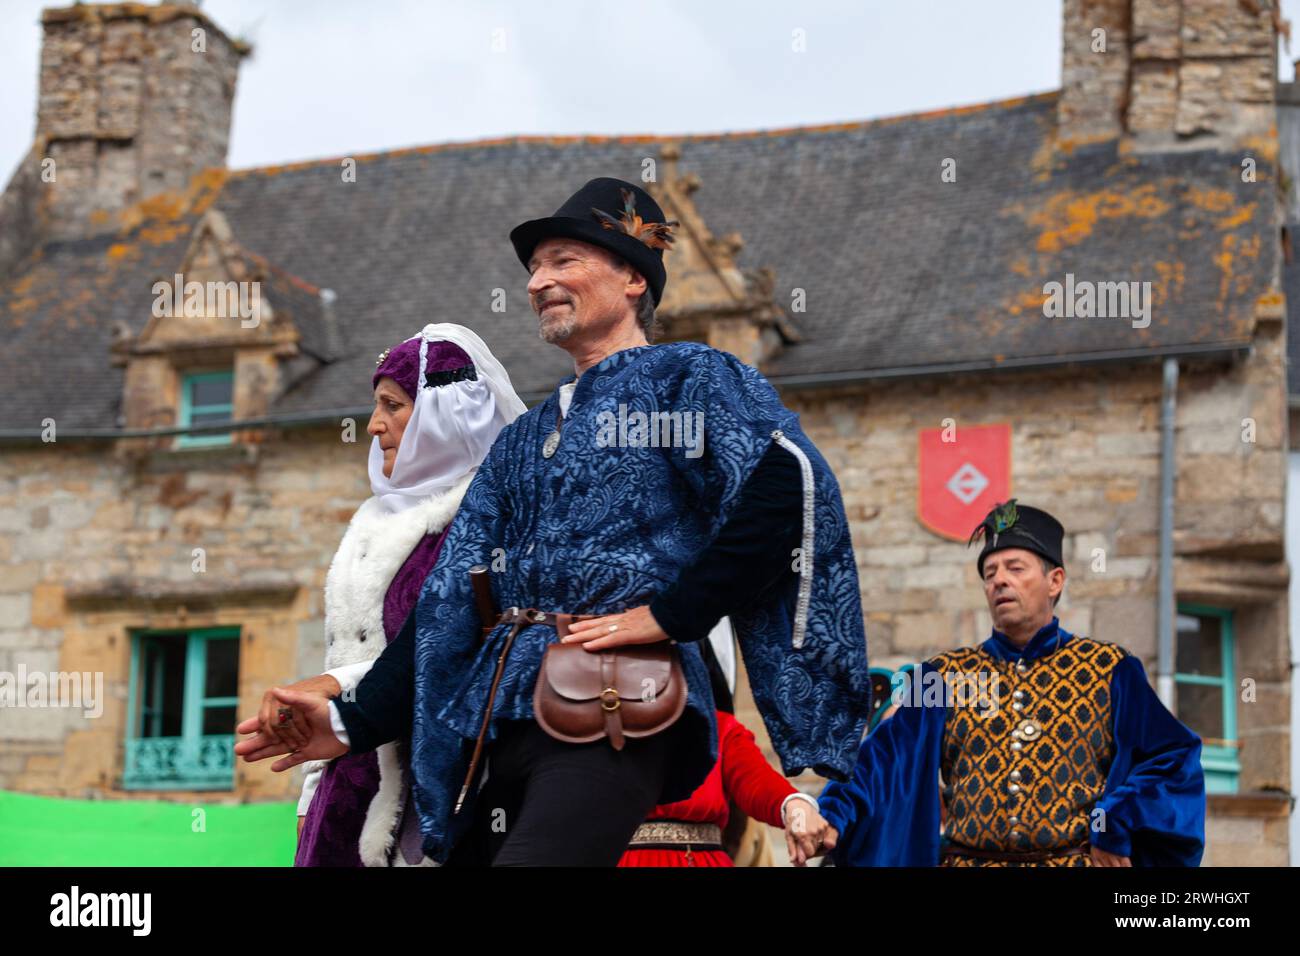 Saint Renan, Francia - 16 luglio 2023: Danciers in abiti medievali su una piattaforma situata sulla vecchia piazza del mercato durante la Festa medievale di Saint Renan Foto Stock